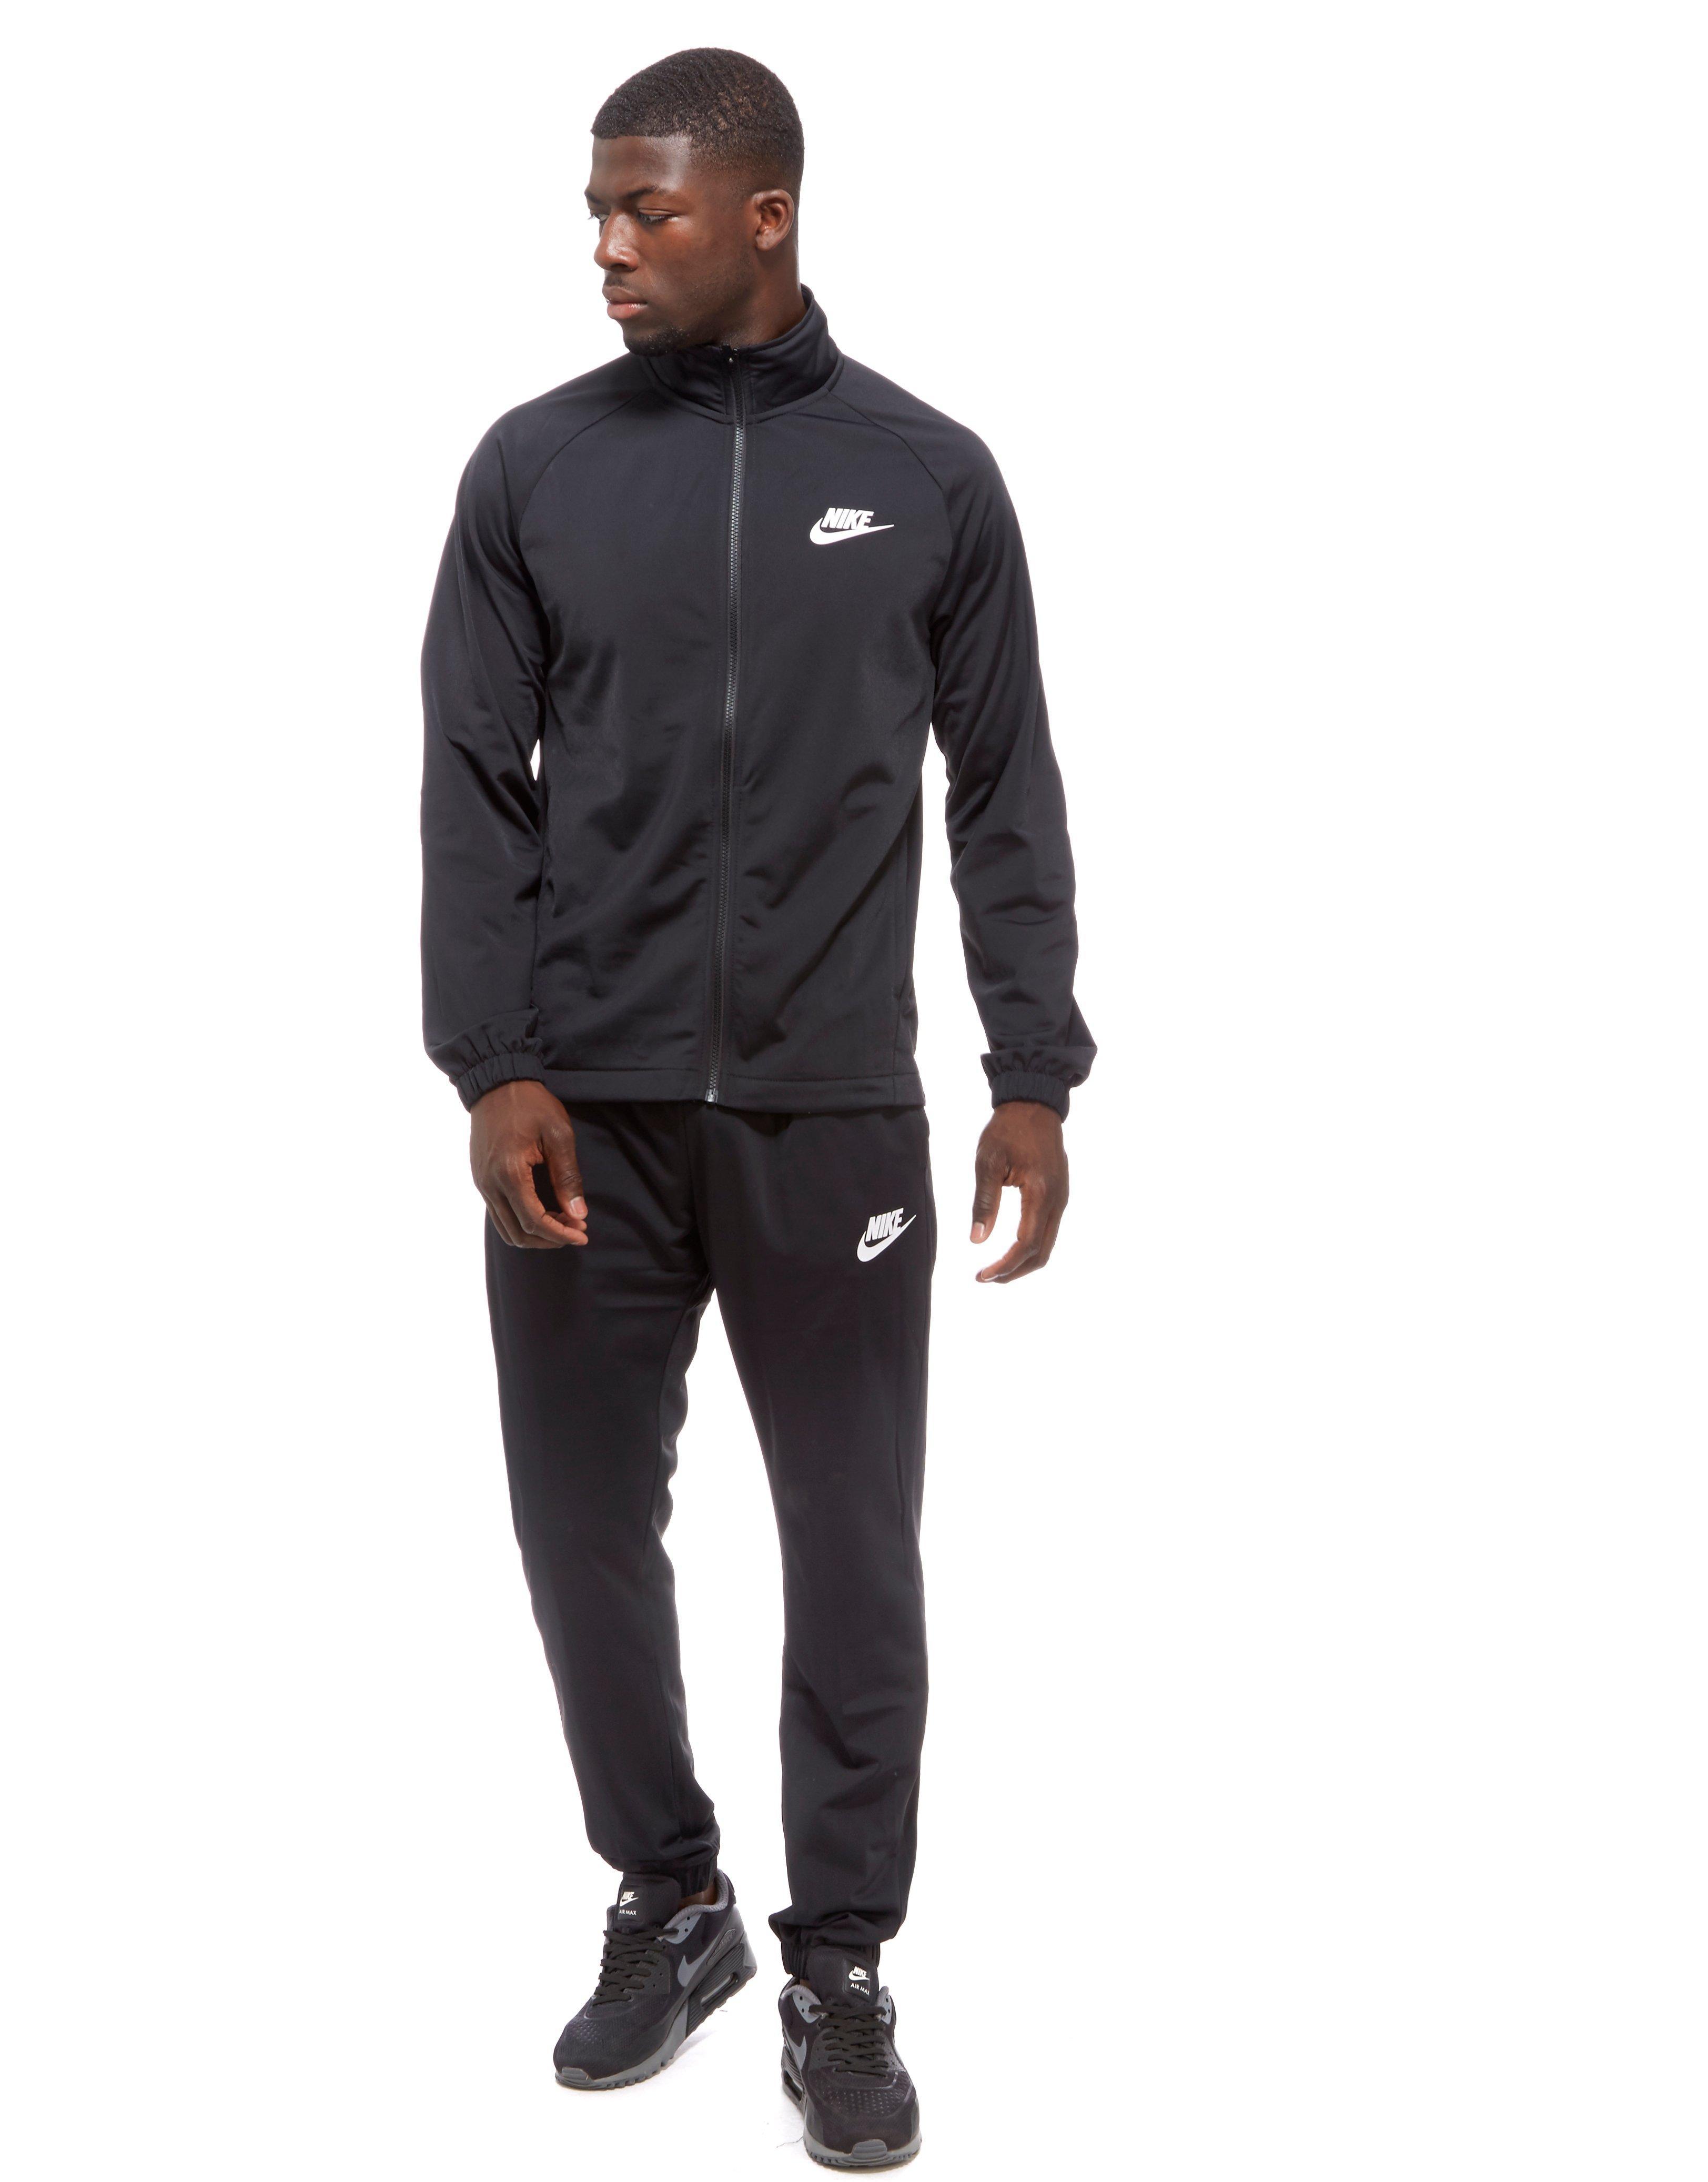 Nike Season 2 Fleece Tracksuit in Black for Men - Lyst